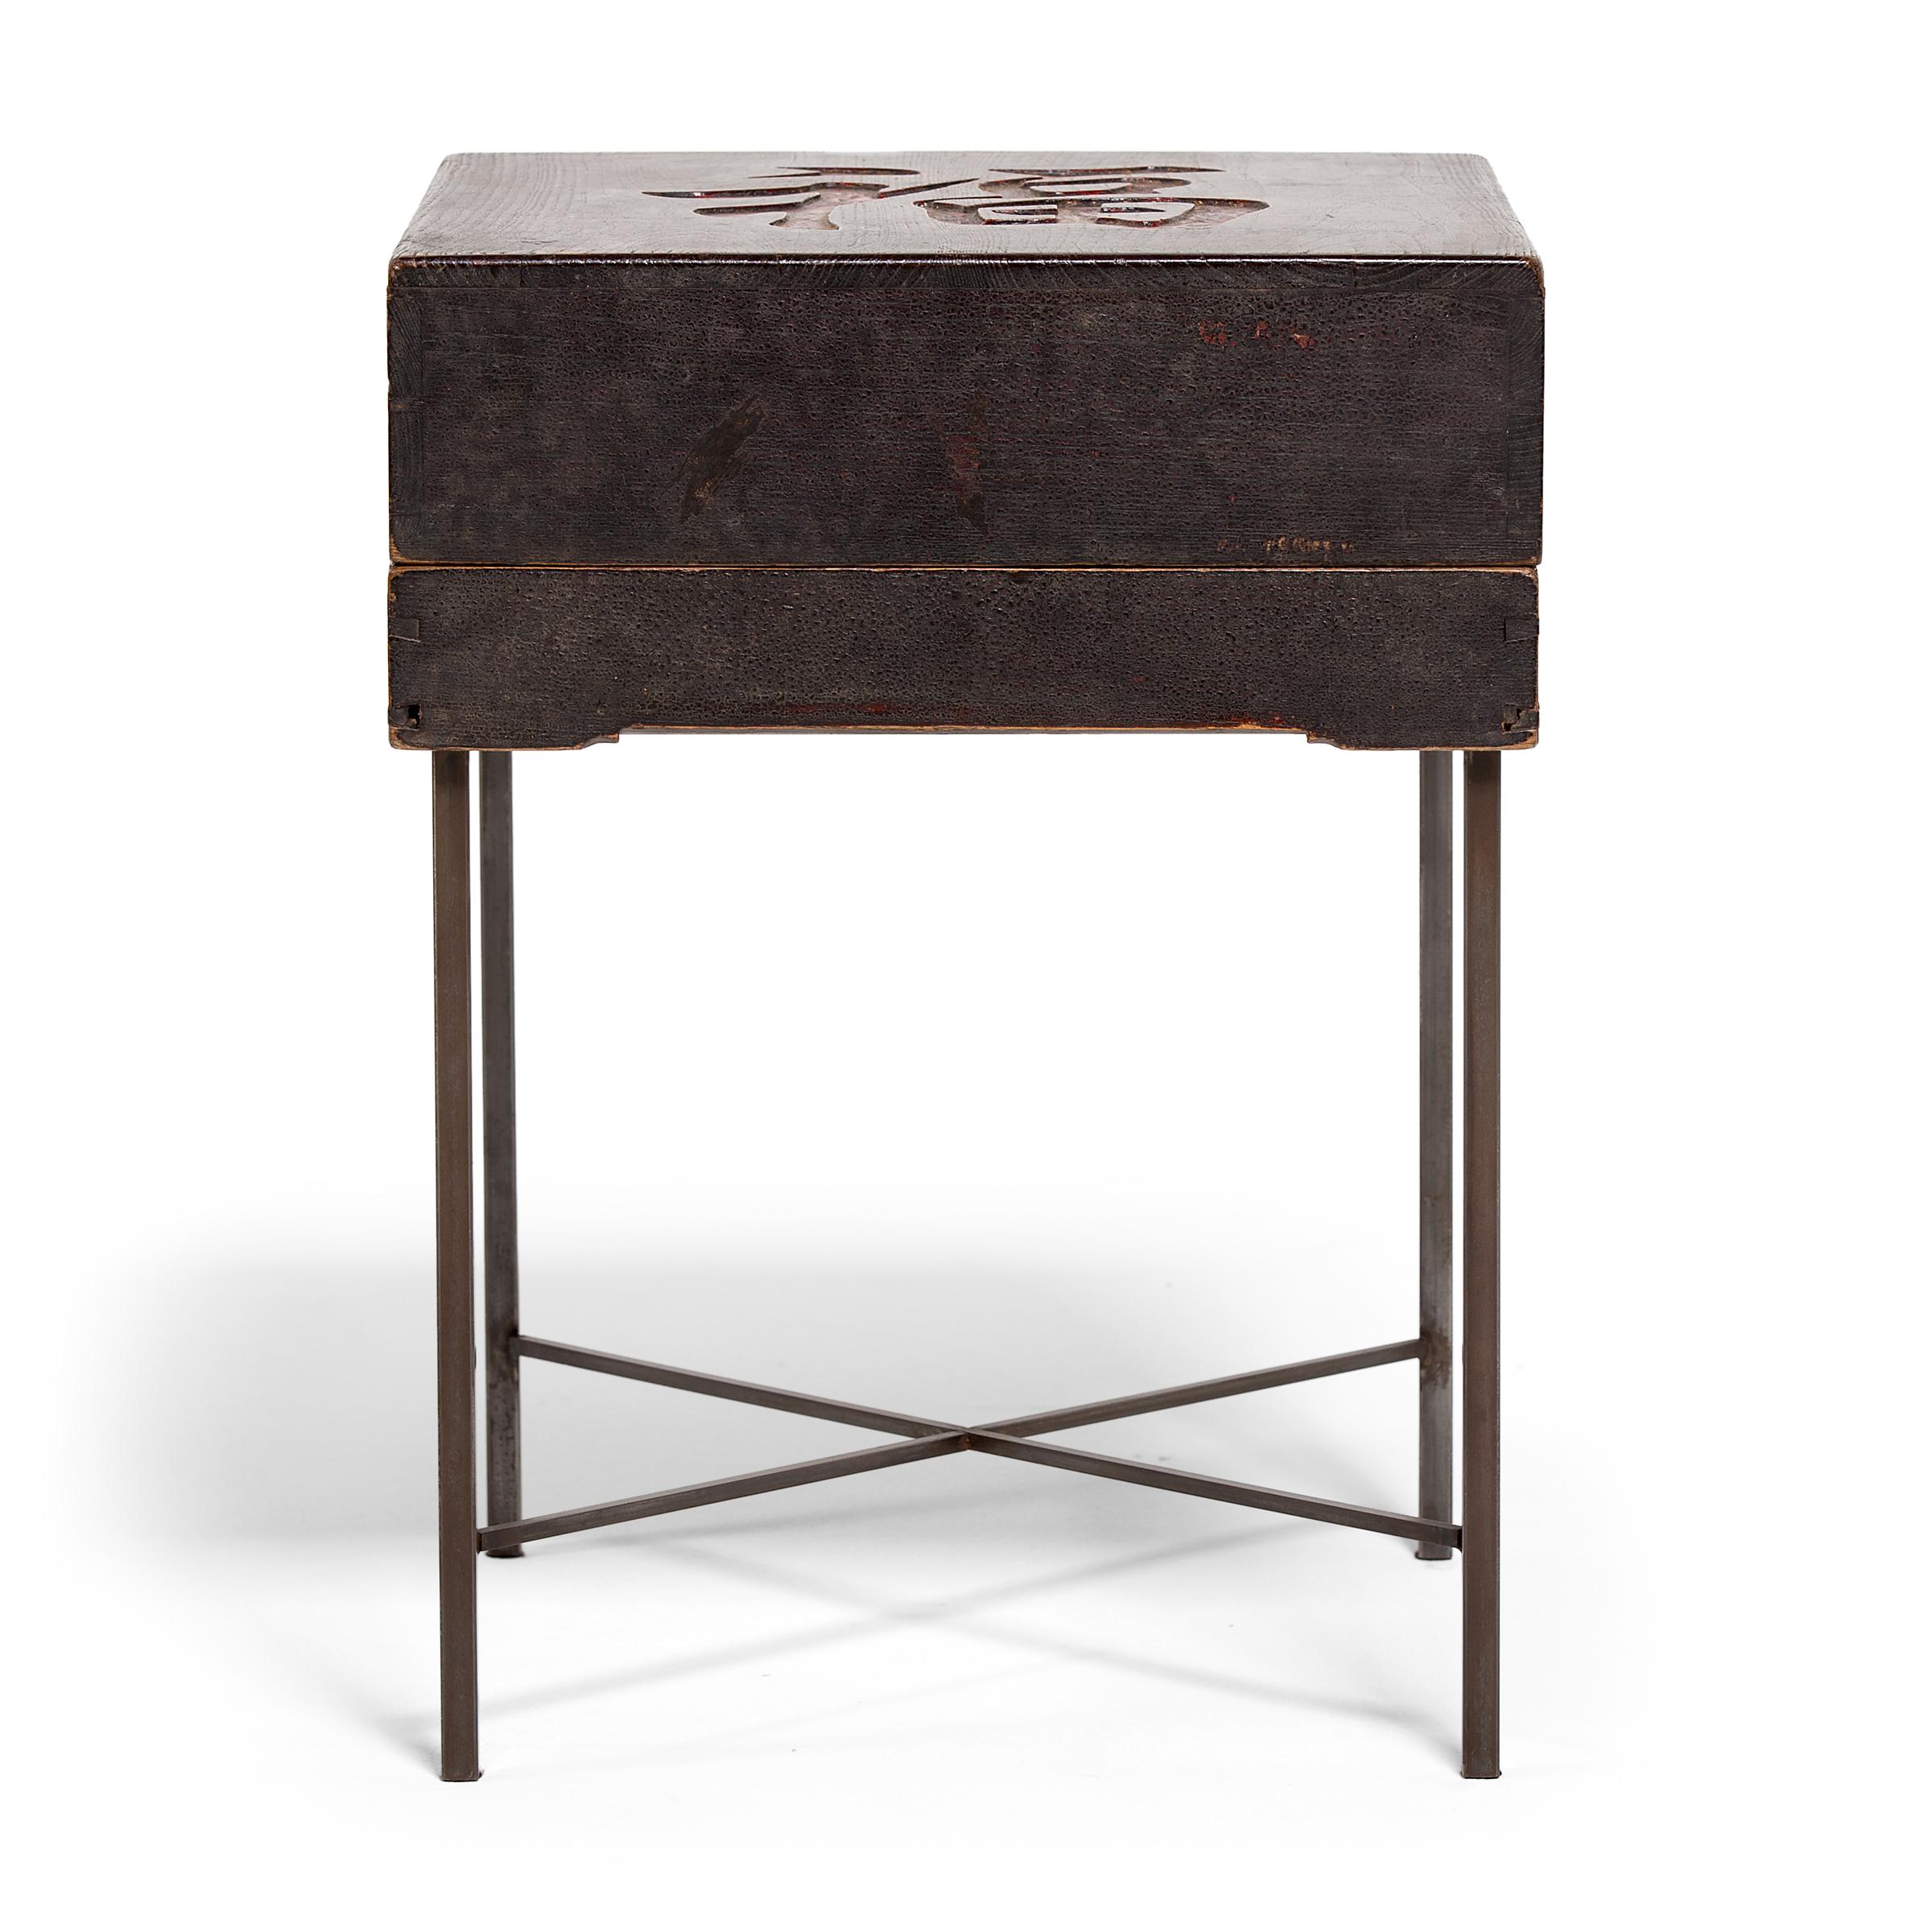 Ce coffret de présentation du XIXe siècle est rehaussé de pieds en acier contemporains pour en faire une table d'appoint ou une table de nuit inattendue. La boîte est fabriquée en bois de pin parfumé et recouverte d'une couche de laque brun foncé.